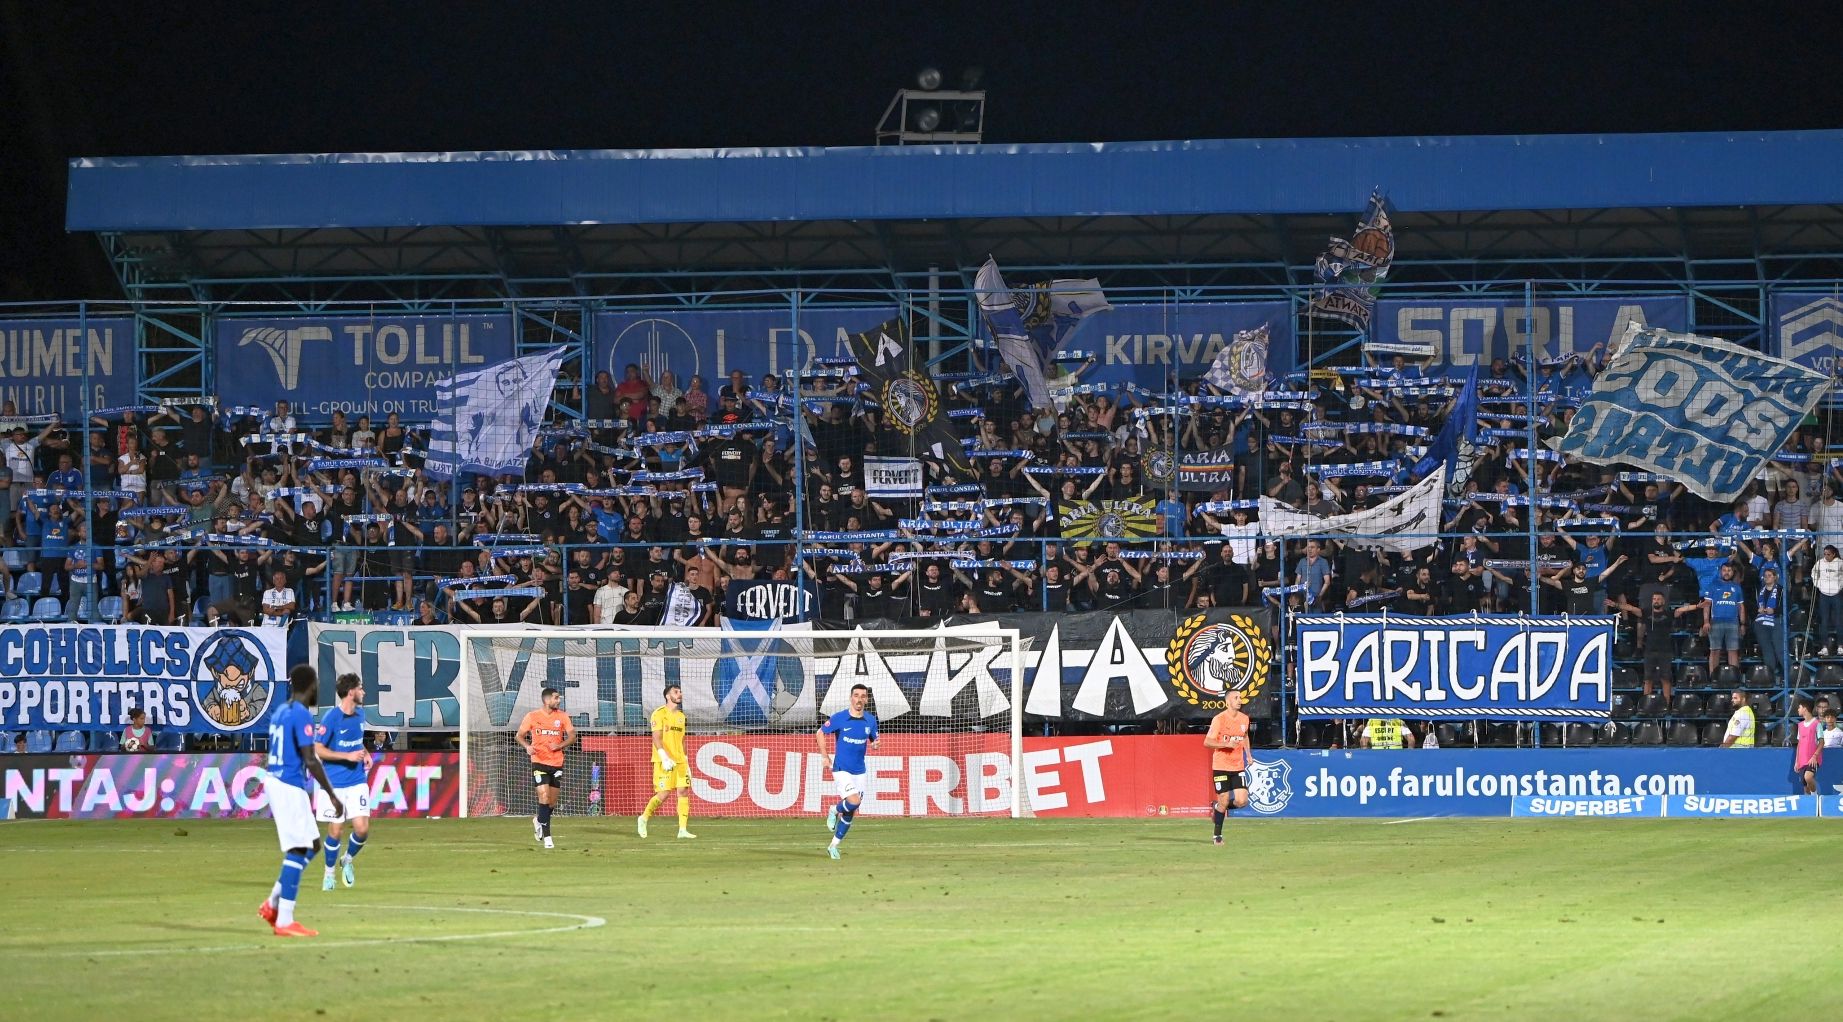 FC Farul a pus în vânzare biletele pentru partida cu Sepsi Sf. Gheorghe - 1-1695639180.jpg